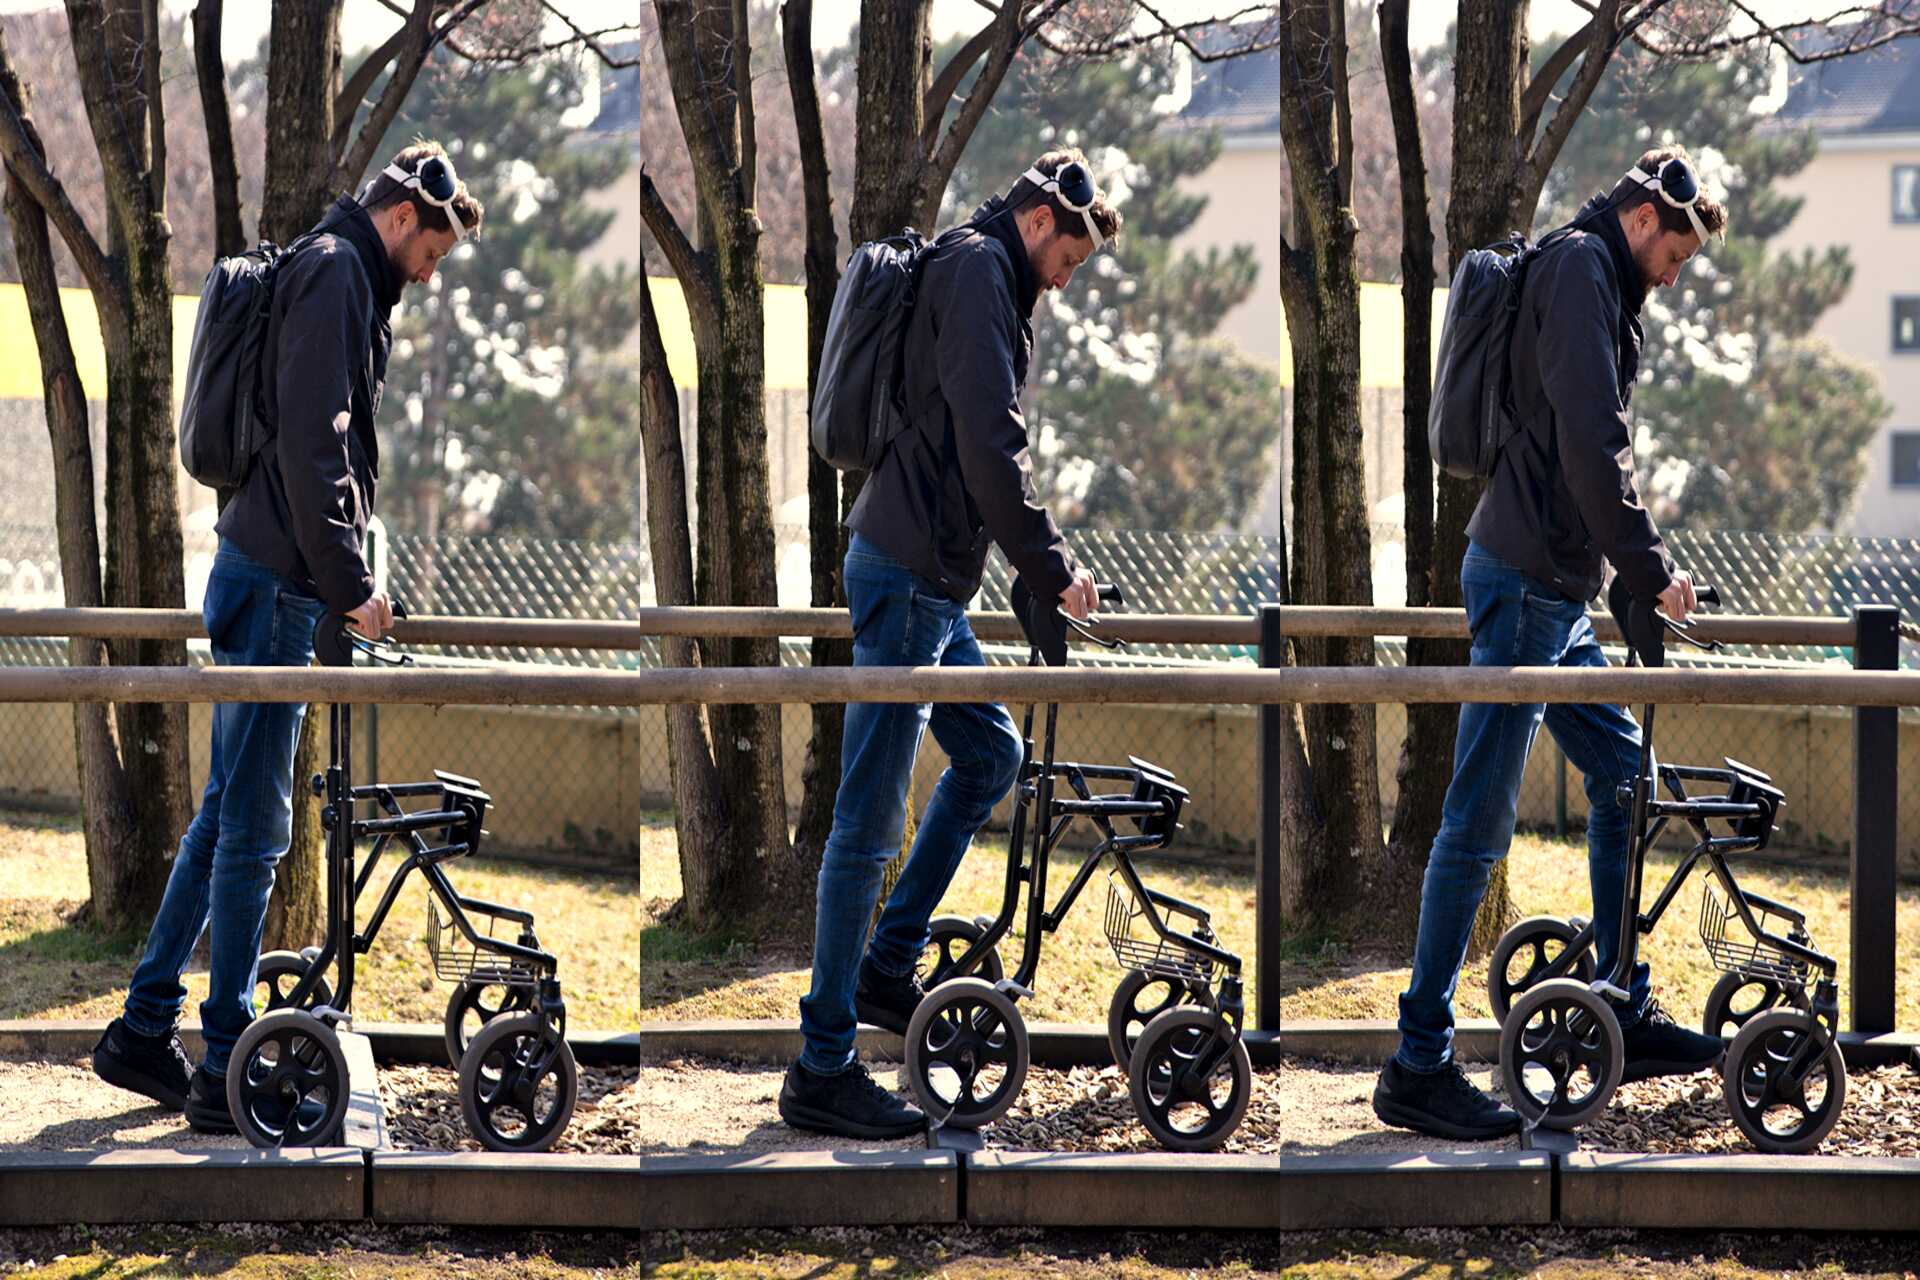 Camminare grazie al pensiero: Gert-Jan Oskam, rimasto paralizzato agli arti inferiori in seguito a un incidente in bicicletta e che ha ripreso a camminare grazie a un ponte digitale fra cervello e midollo spinale, all’Università di Losanna